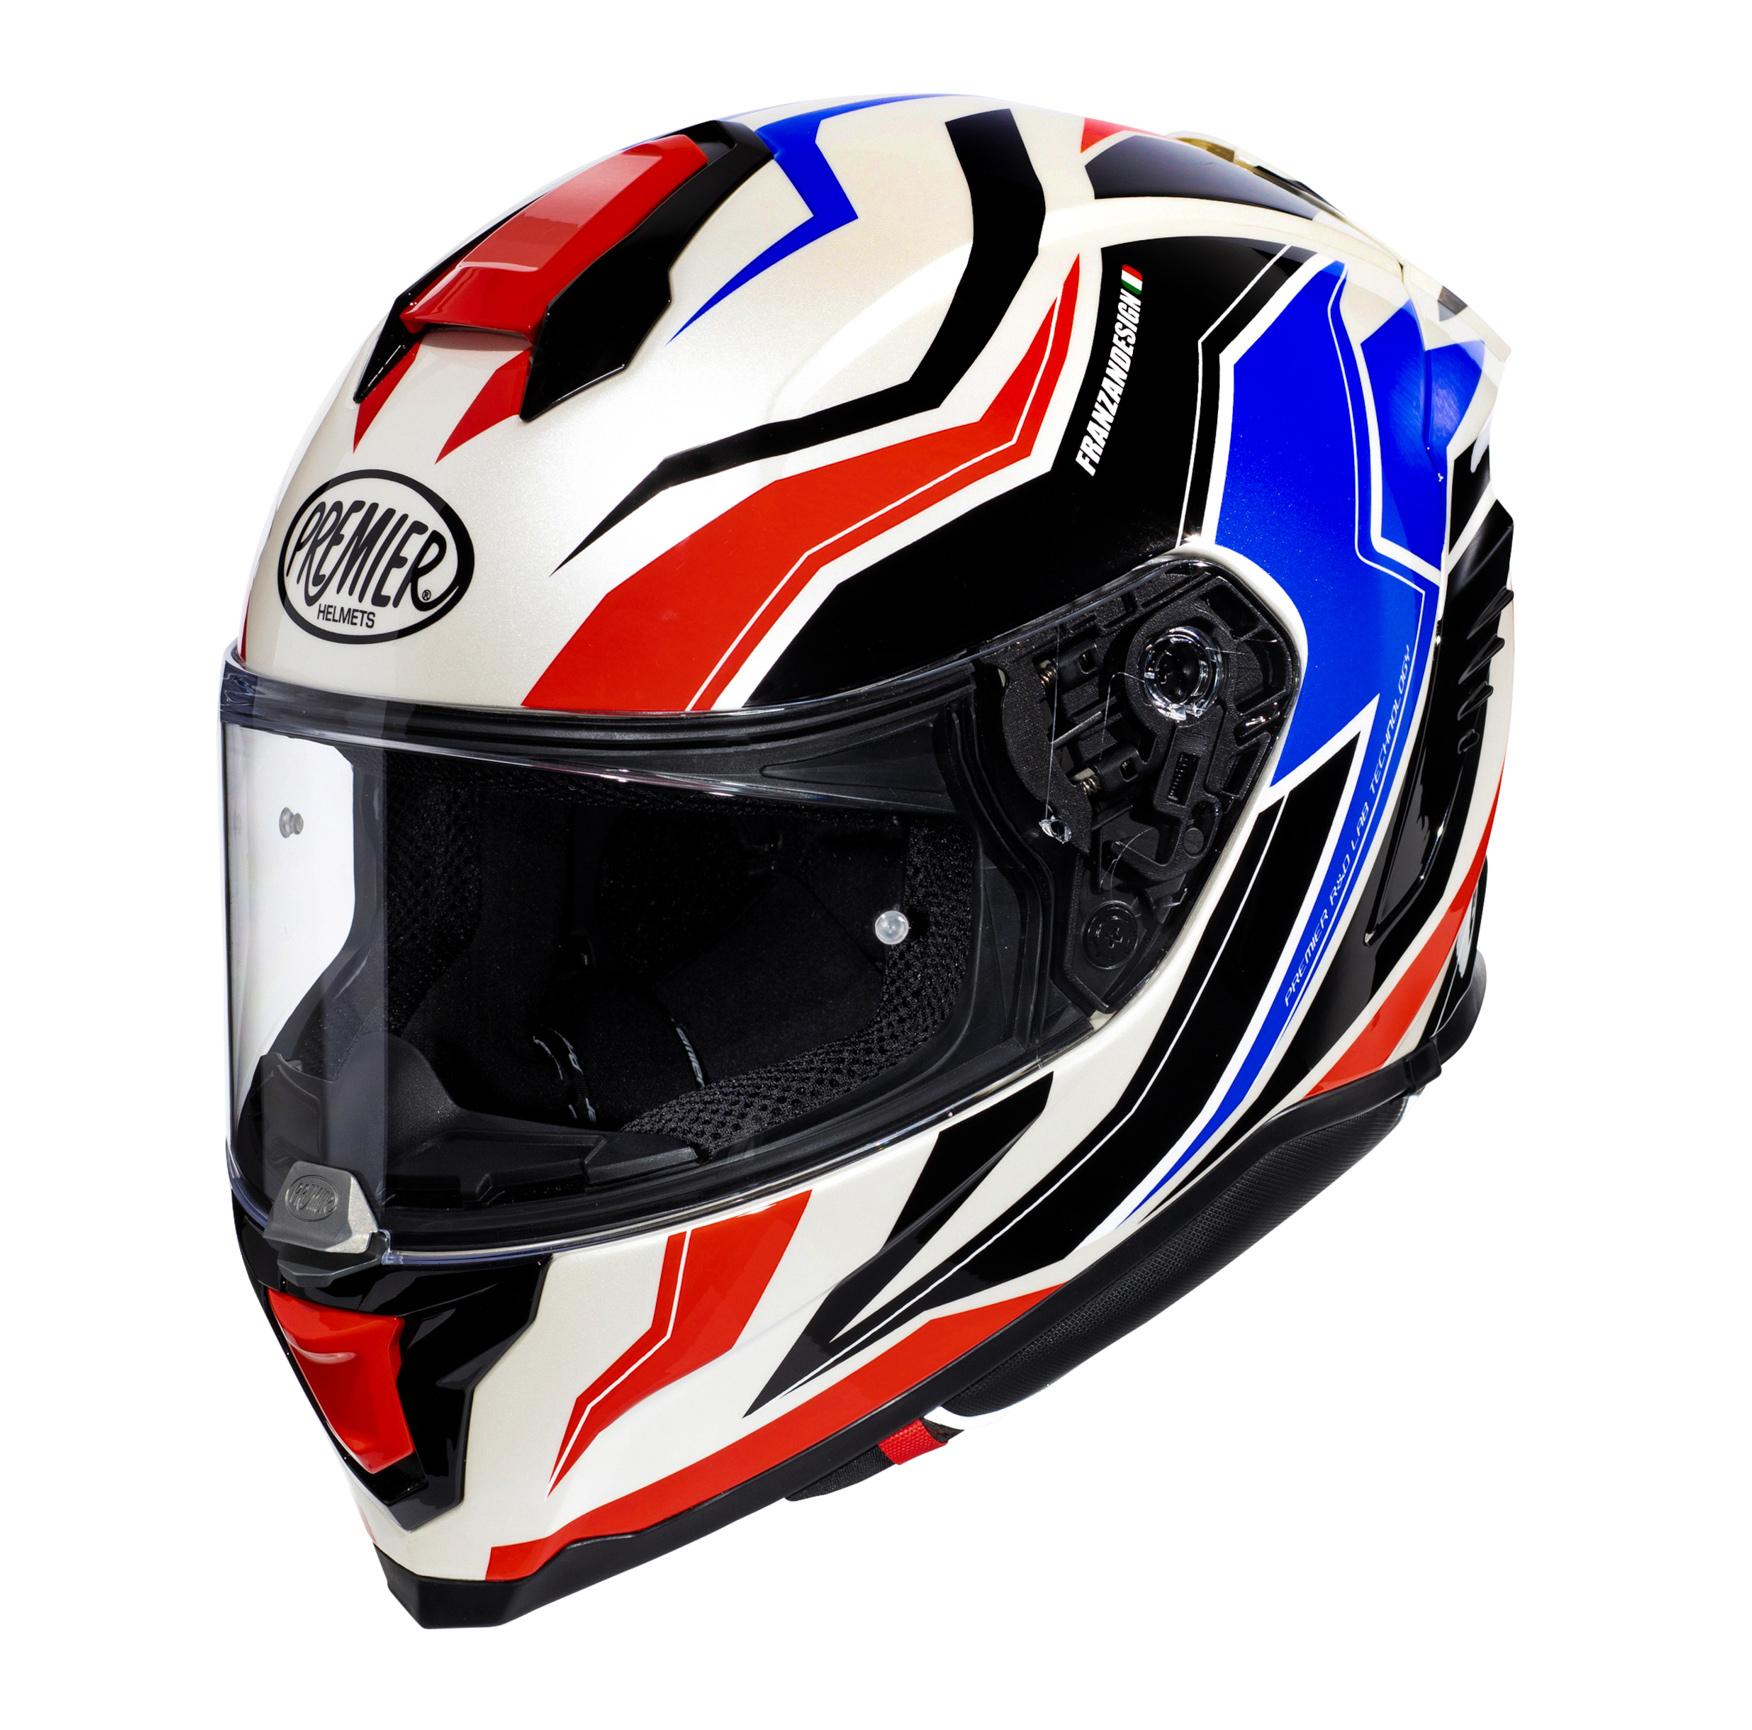 Premier Hyper Rw Full Face Motorcycle Helmet - Black/Red/White, M